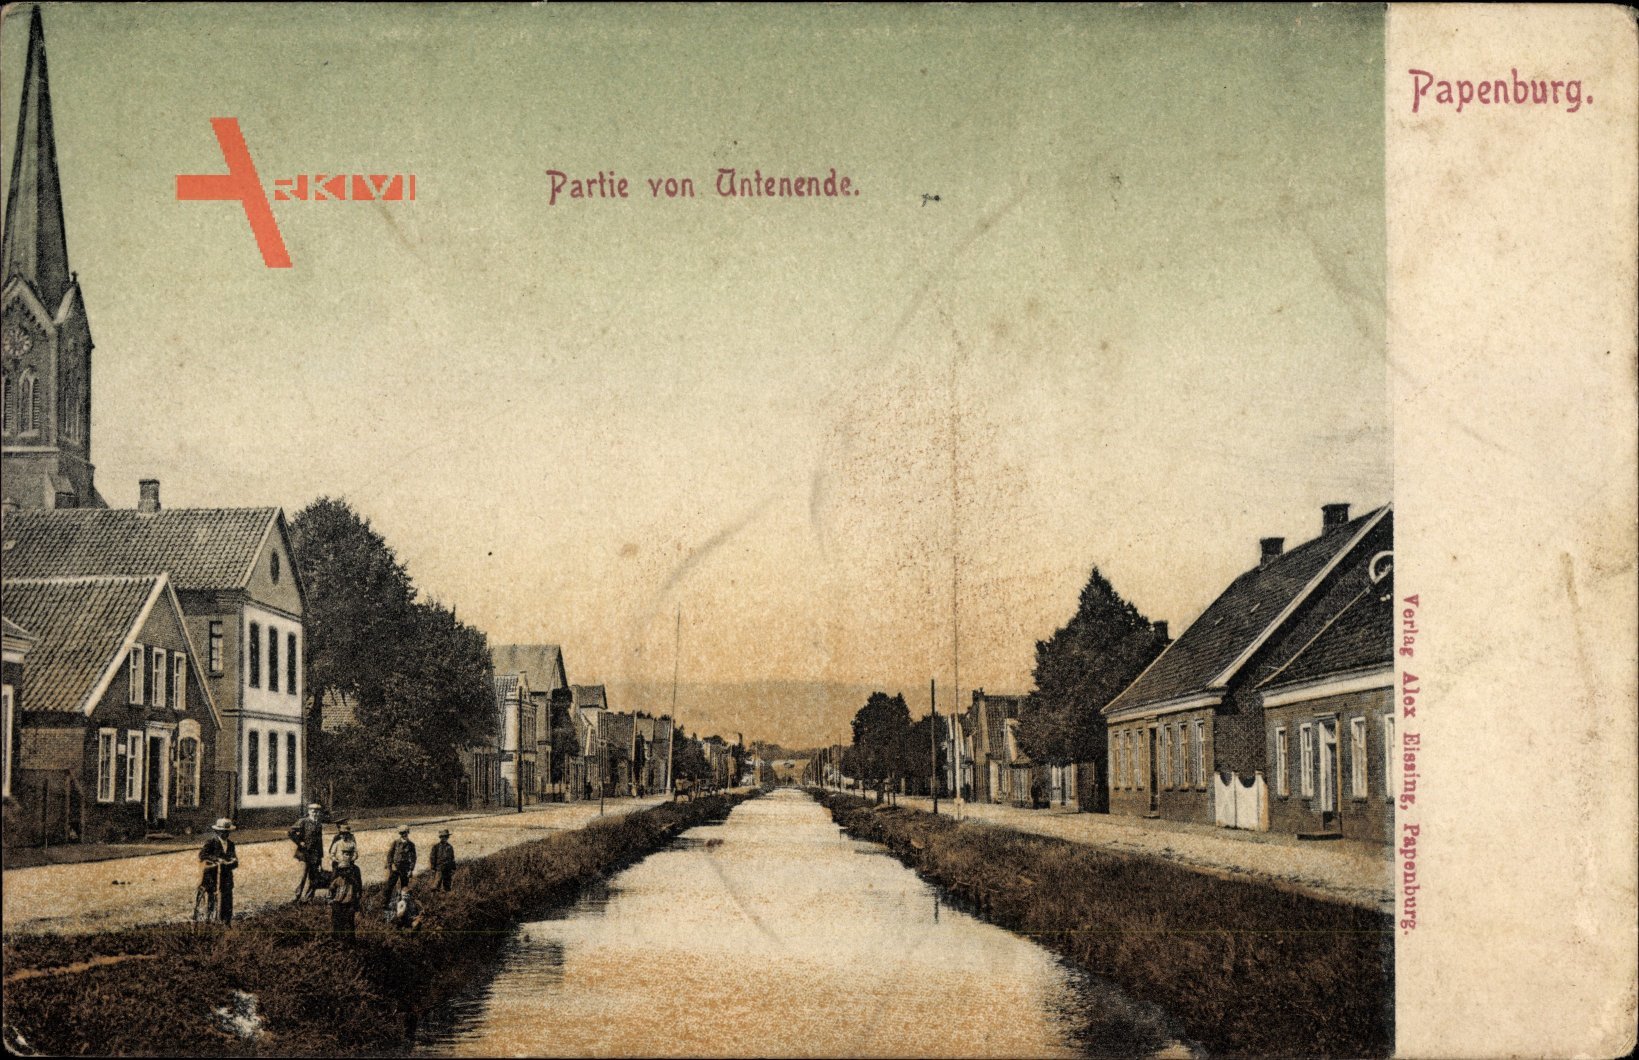 Papenburg im Emsland, Partie von Antenende, Fluss, Kinder, Häuser